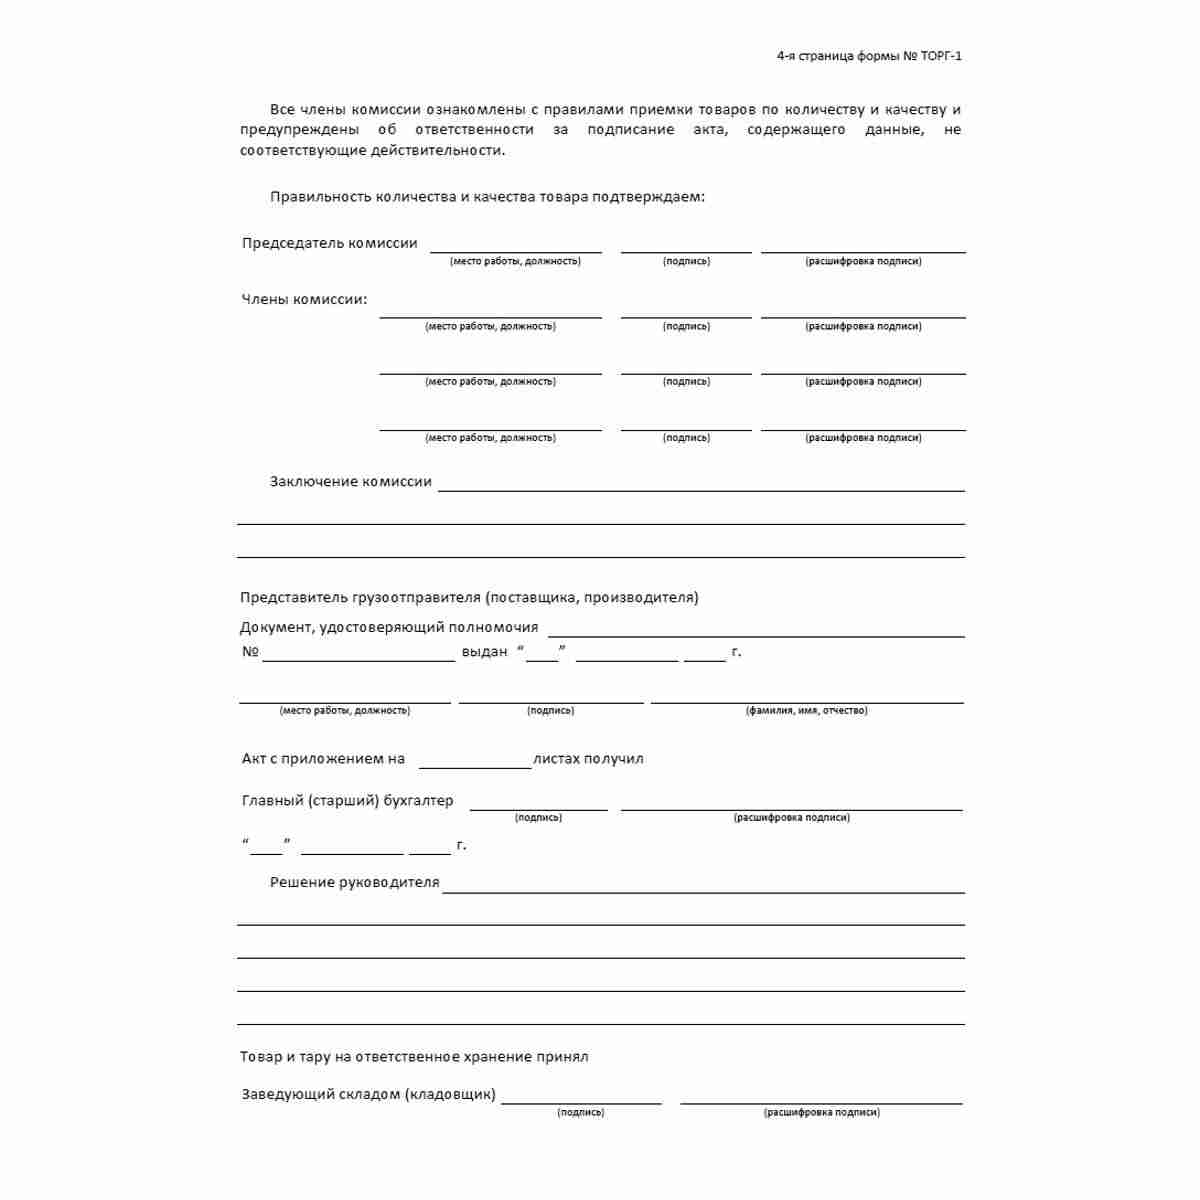 Унифицированная форма первичной учетной документации №ТОРГ-1 "Акт о приемке товаров" (ОКУД 0330201). Стр 4